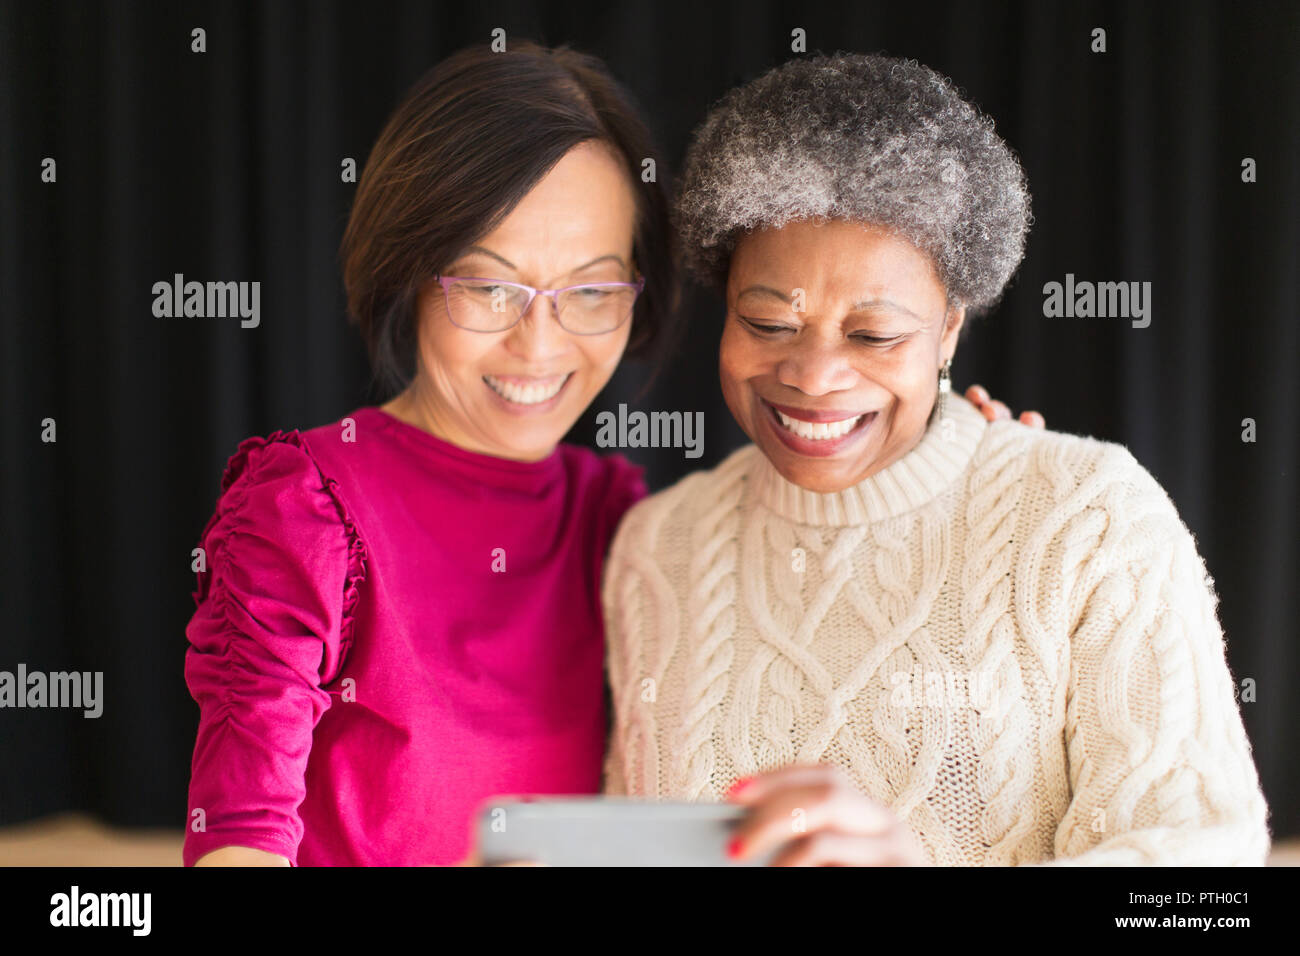 Lächelnd Active Senior Frauen selfie mit Kamera Handy Stockfoto